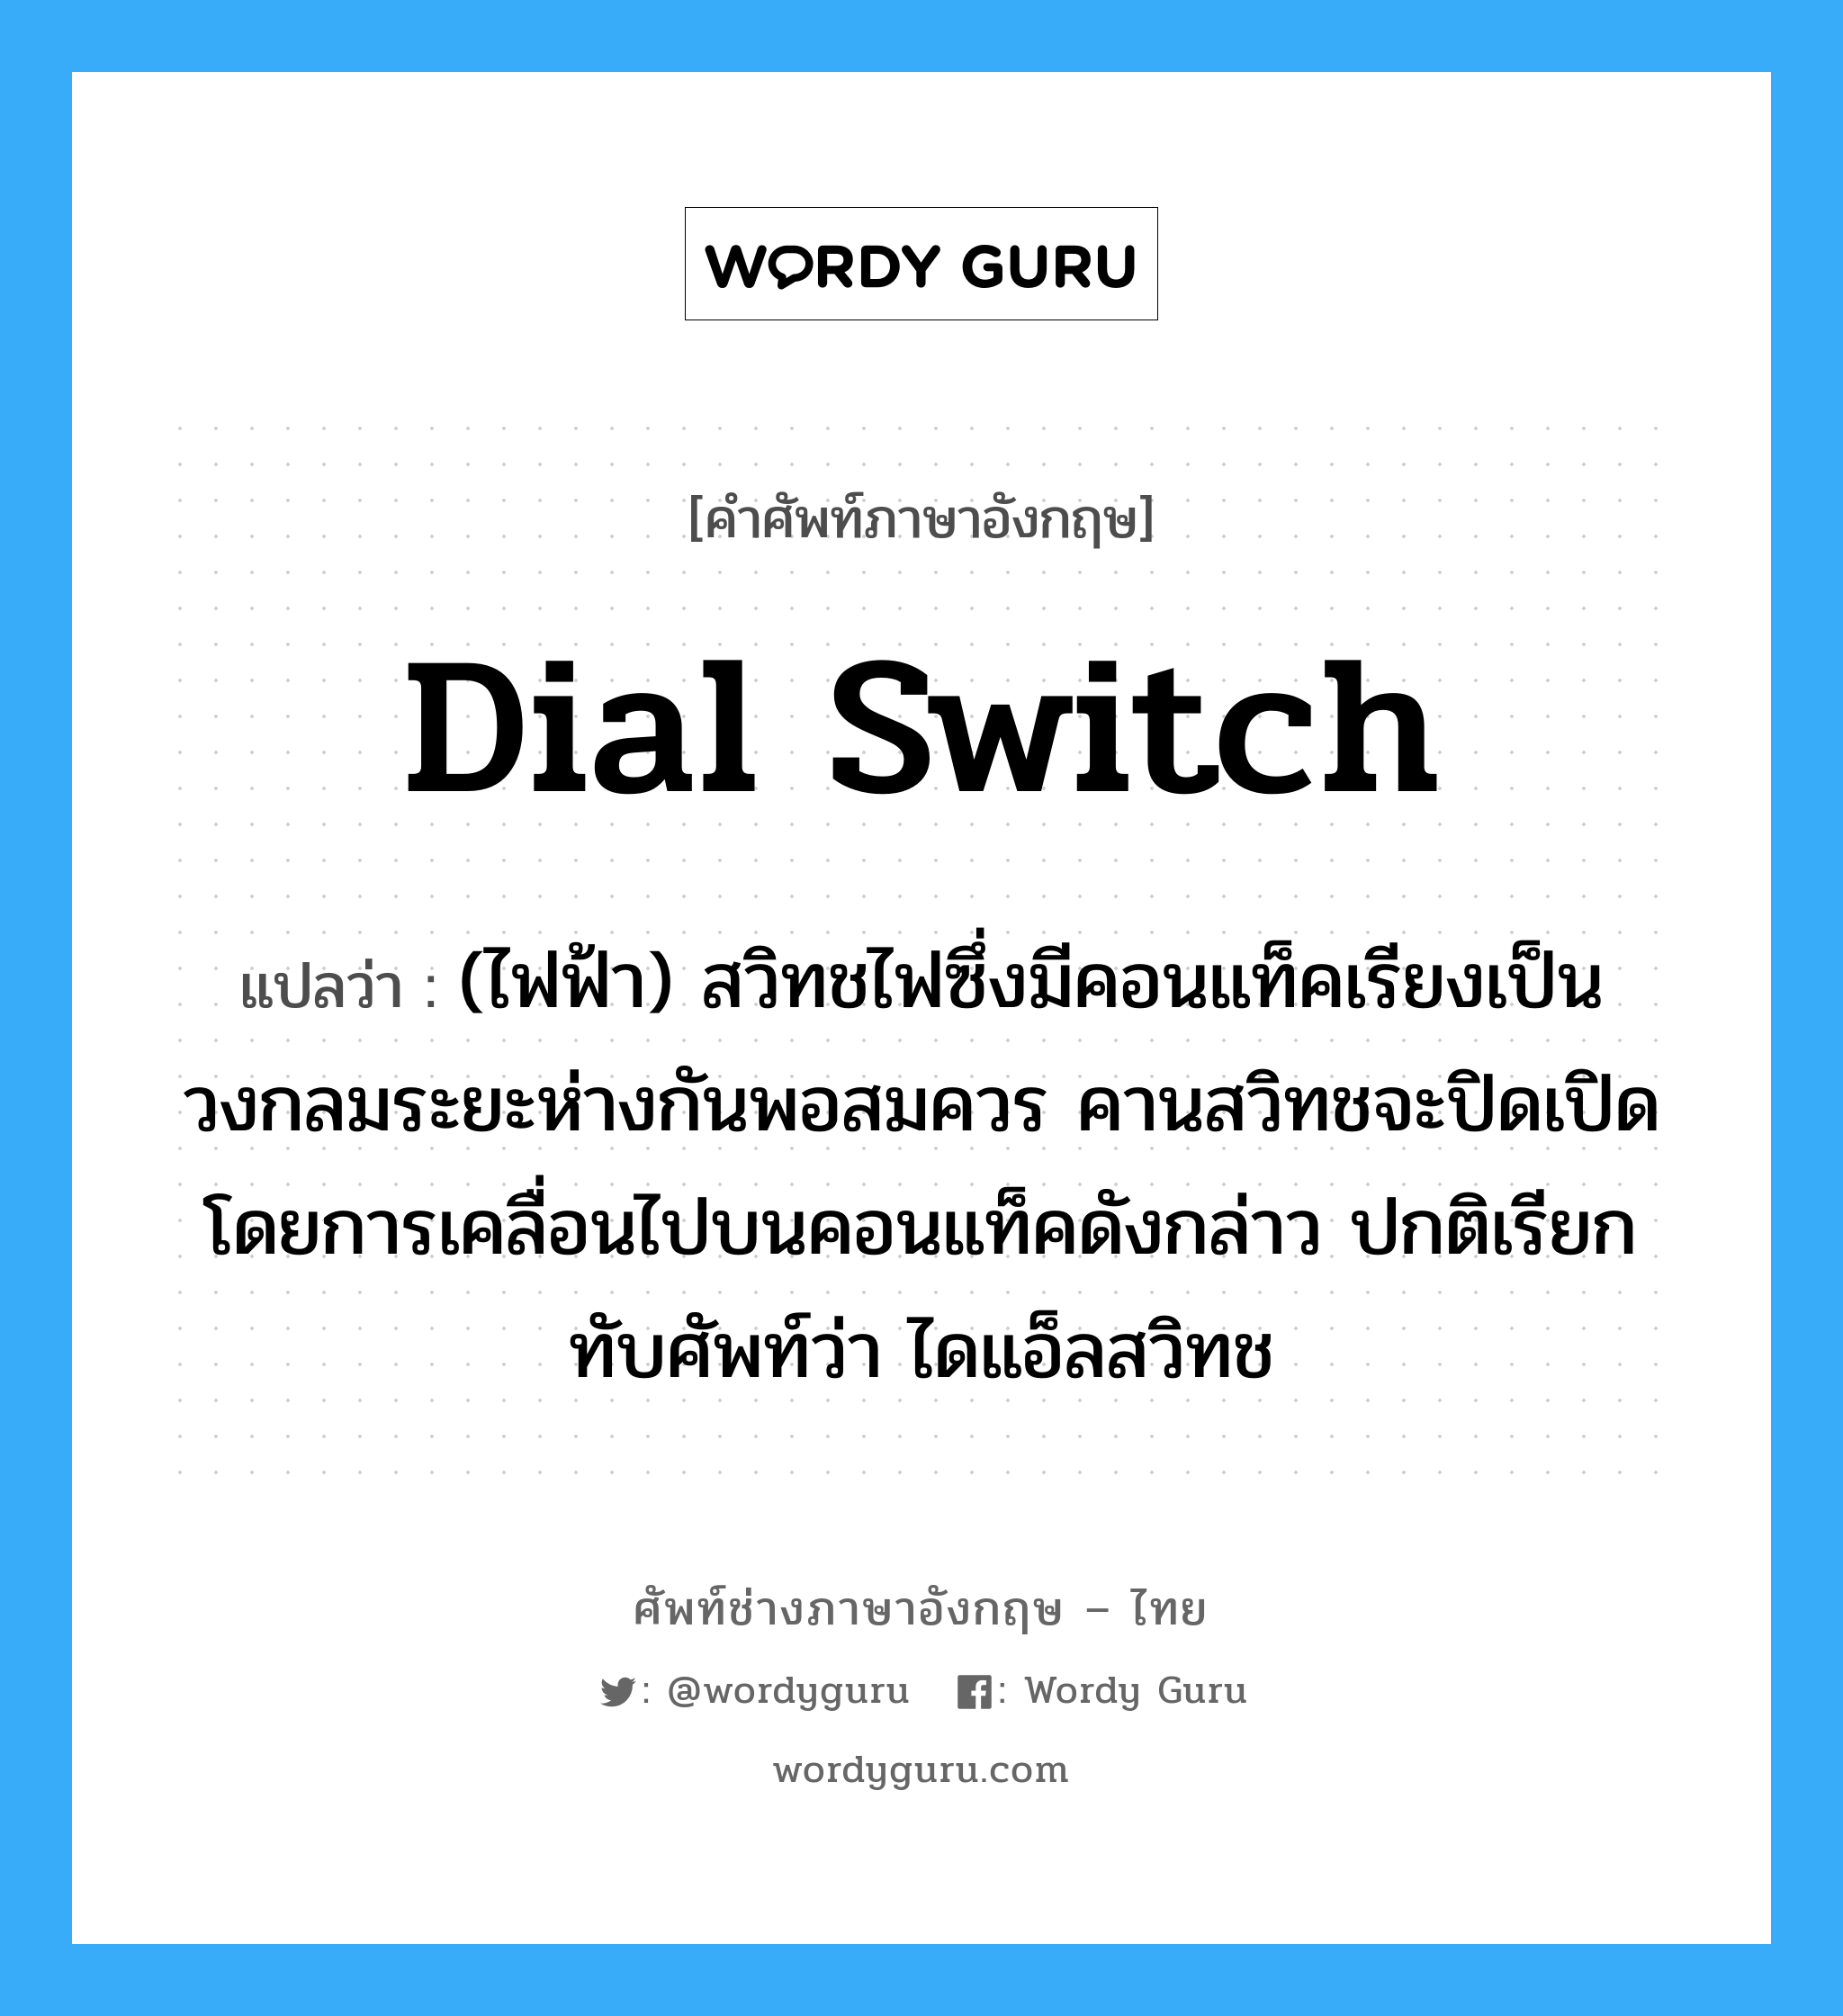 dial switch แปลว่า?, คำศัพท์ช่างภาษาอังกฤษ - ไทย dial switch คำศัพท์ภาษาอังกฤษ dial switch แปลว่า (ไฟฟ้า) สวิทชไฟซึ่งมีคอนแท็คเรียงเป็นวงกลมระยะห่างกันพอสมควร คานสวิทชจะปิดเปิดโดยการเคลื่อนไปบนคอนแท็คดังกล่าว ปกติเรียกทับศัพท์ว่า ไดแอ็ลสวิทช